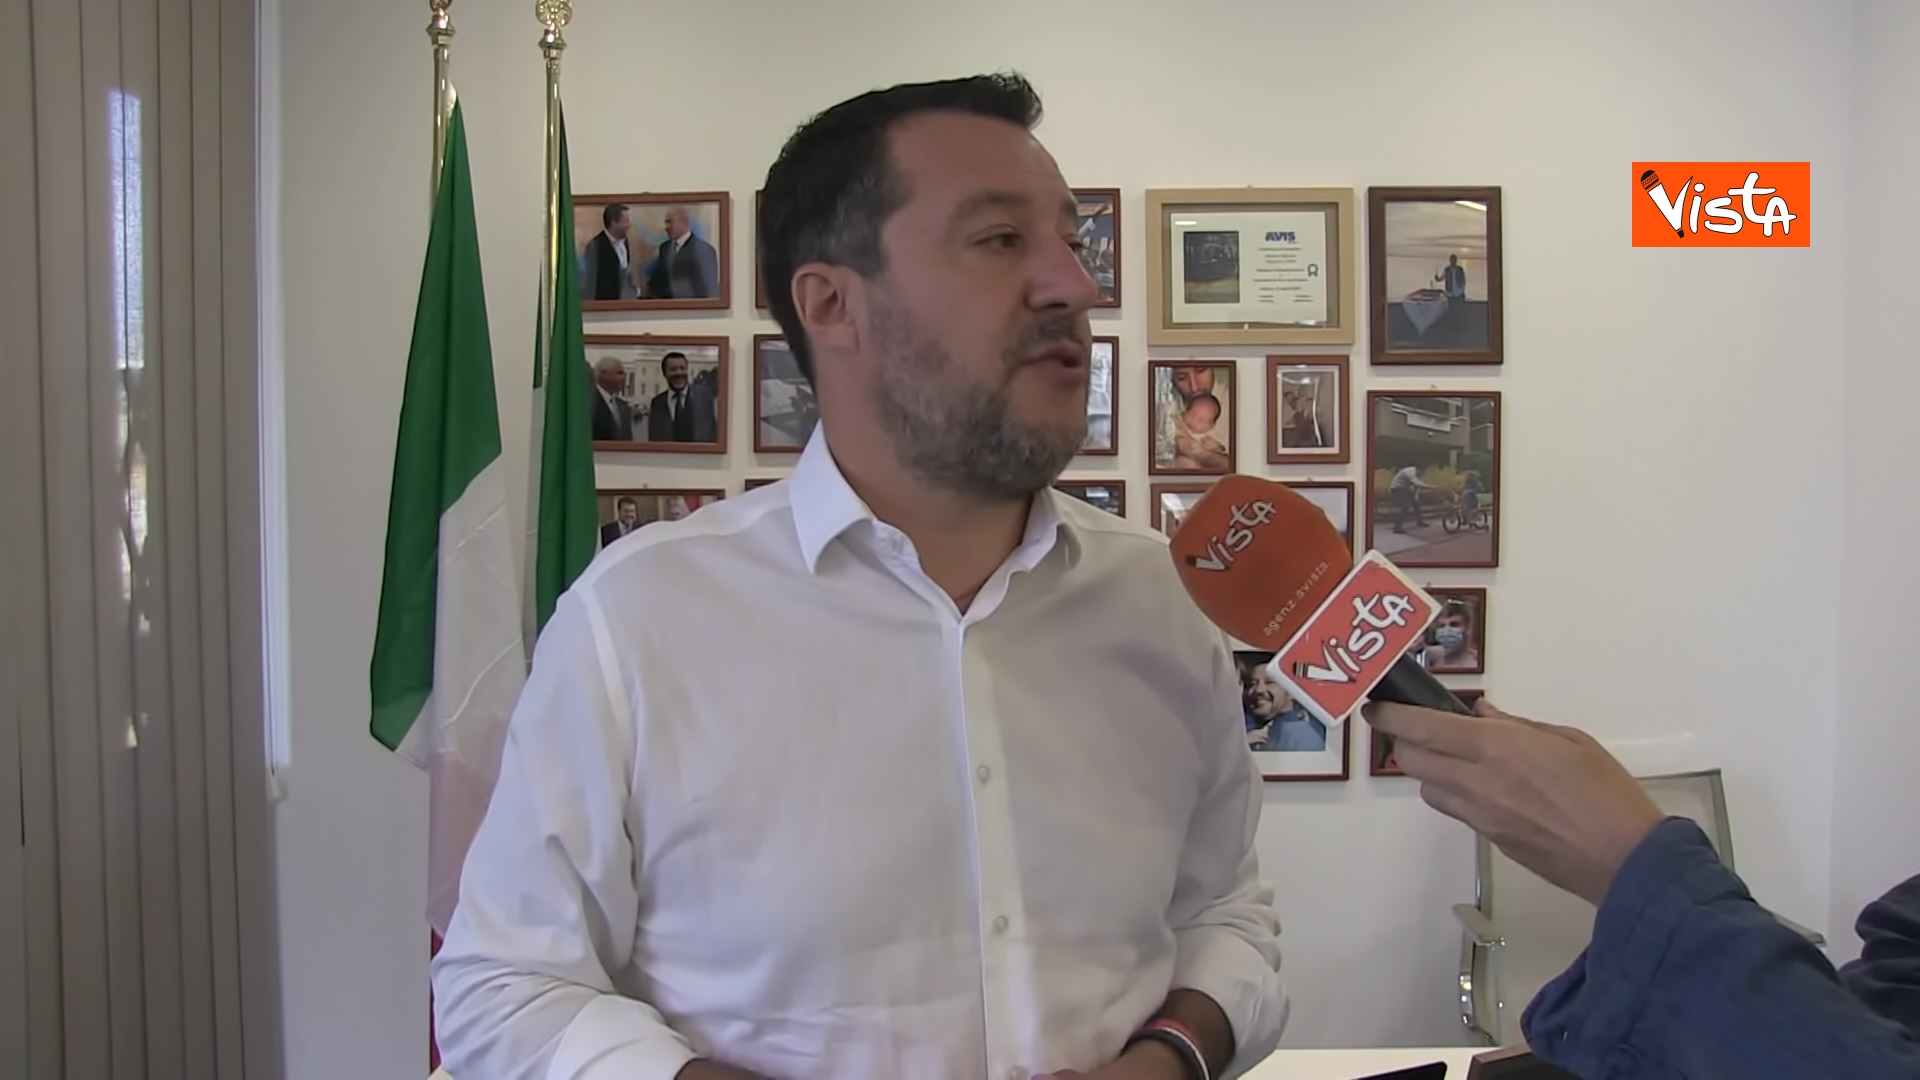 L'intervista al Segretario della Lega Matteo Salvini del direttore di Vista Jakhnagiev, le immagini